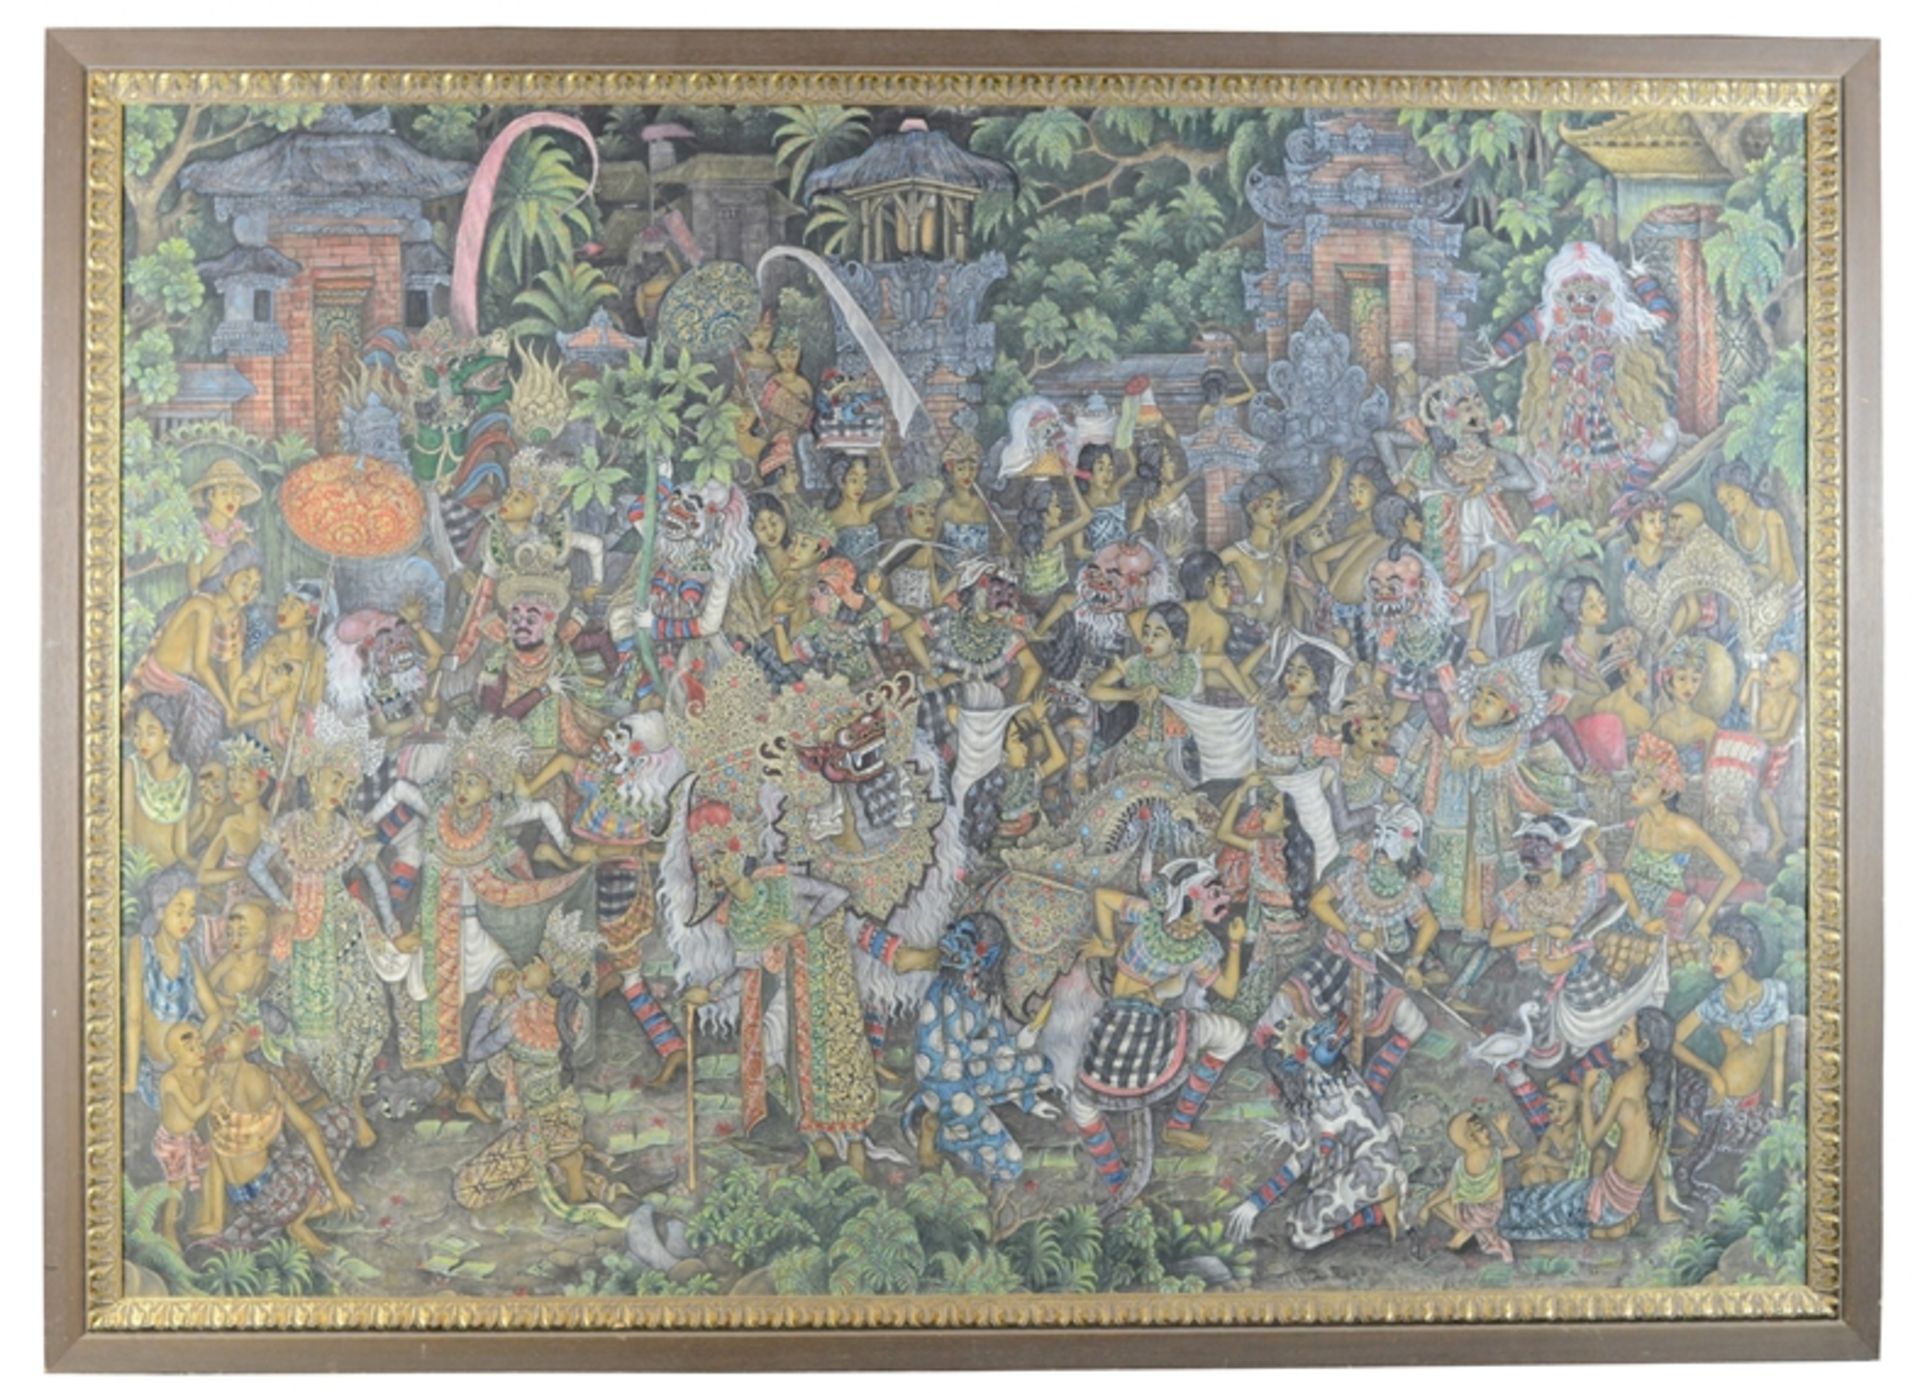 Balinesische Malerei (20. Jh.) "Ngrupuk Parade" mit Ogoh-ogohs und feiernden Personen, traditionelle